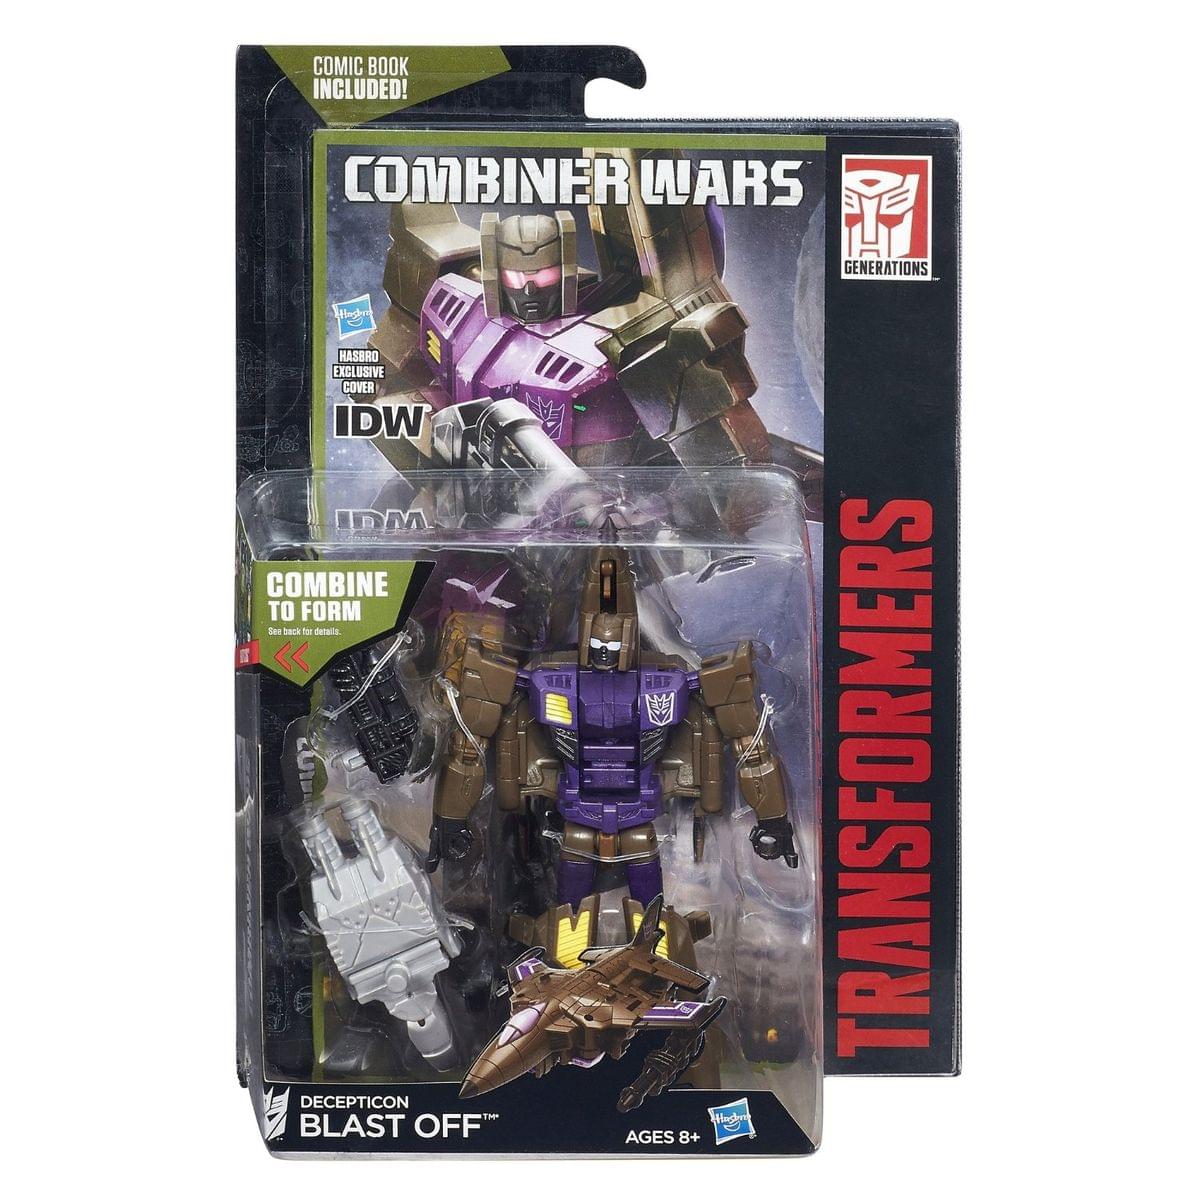 Transformers Generations Combiner Wars Deluxe Class Action Figure: Blast Off